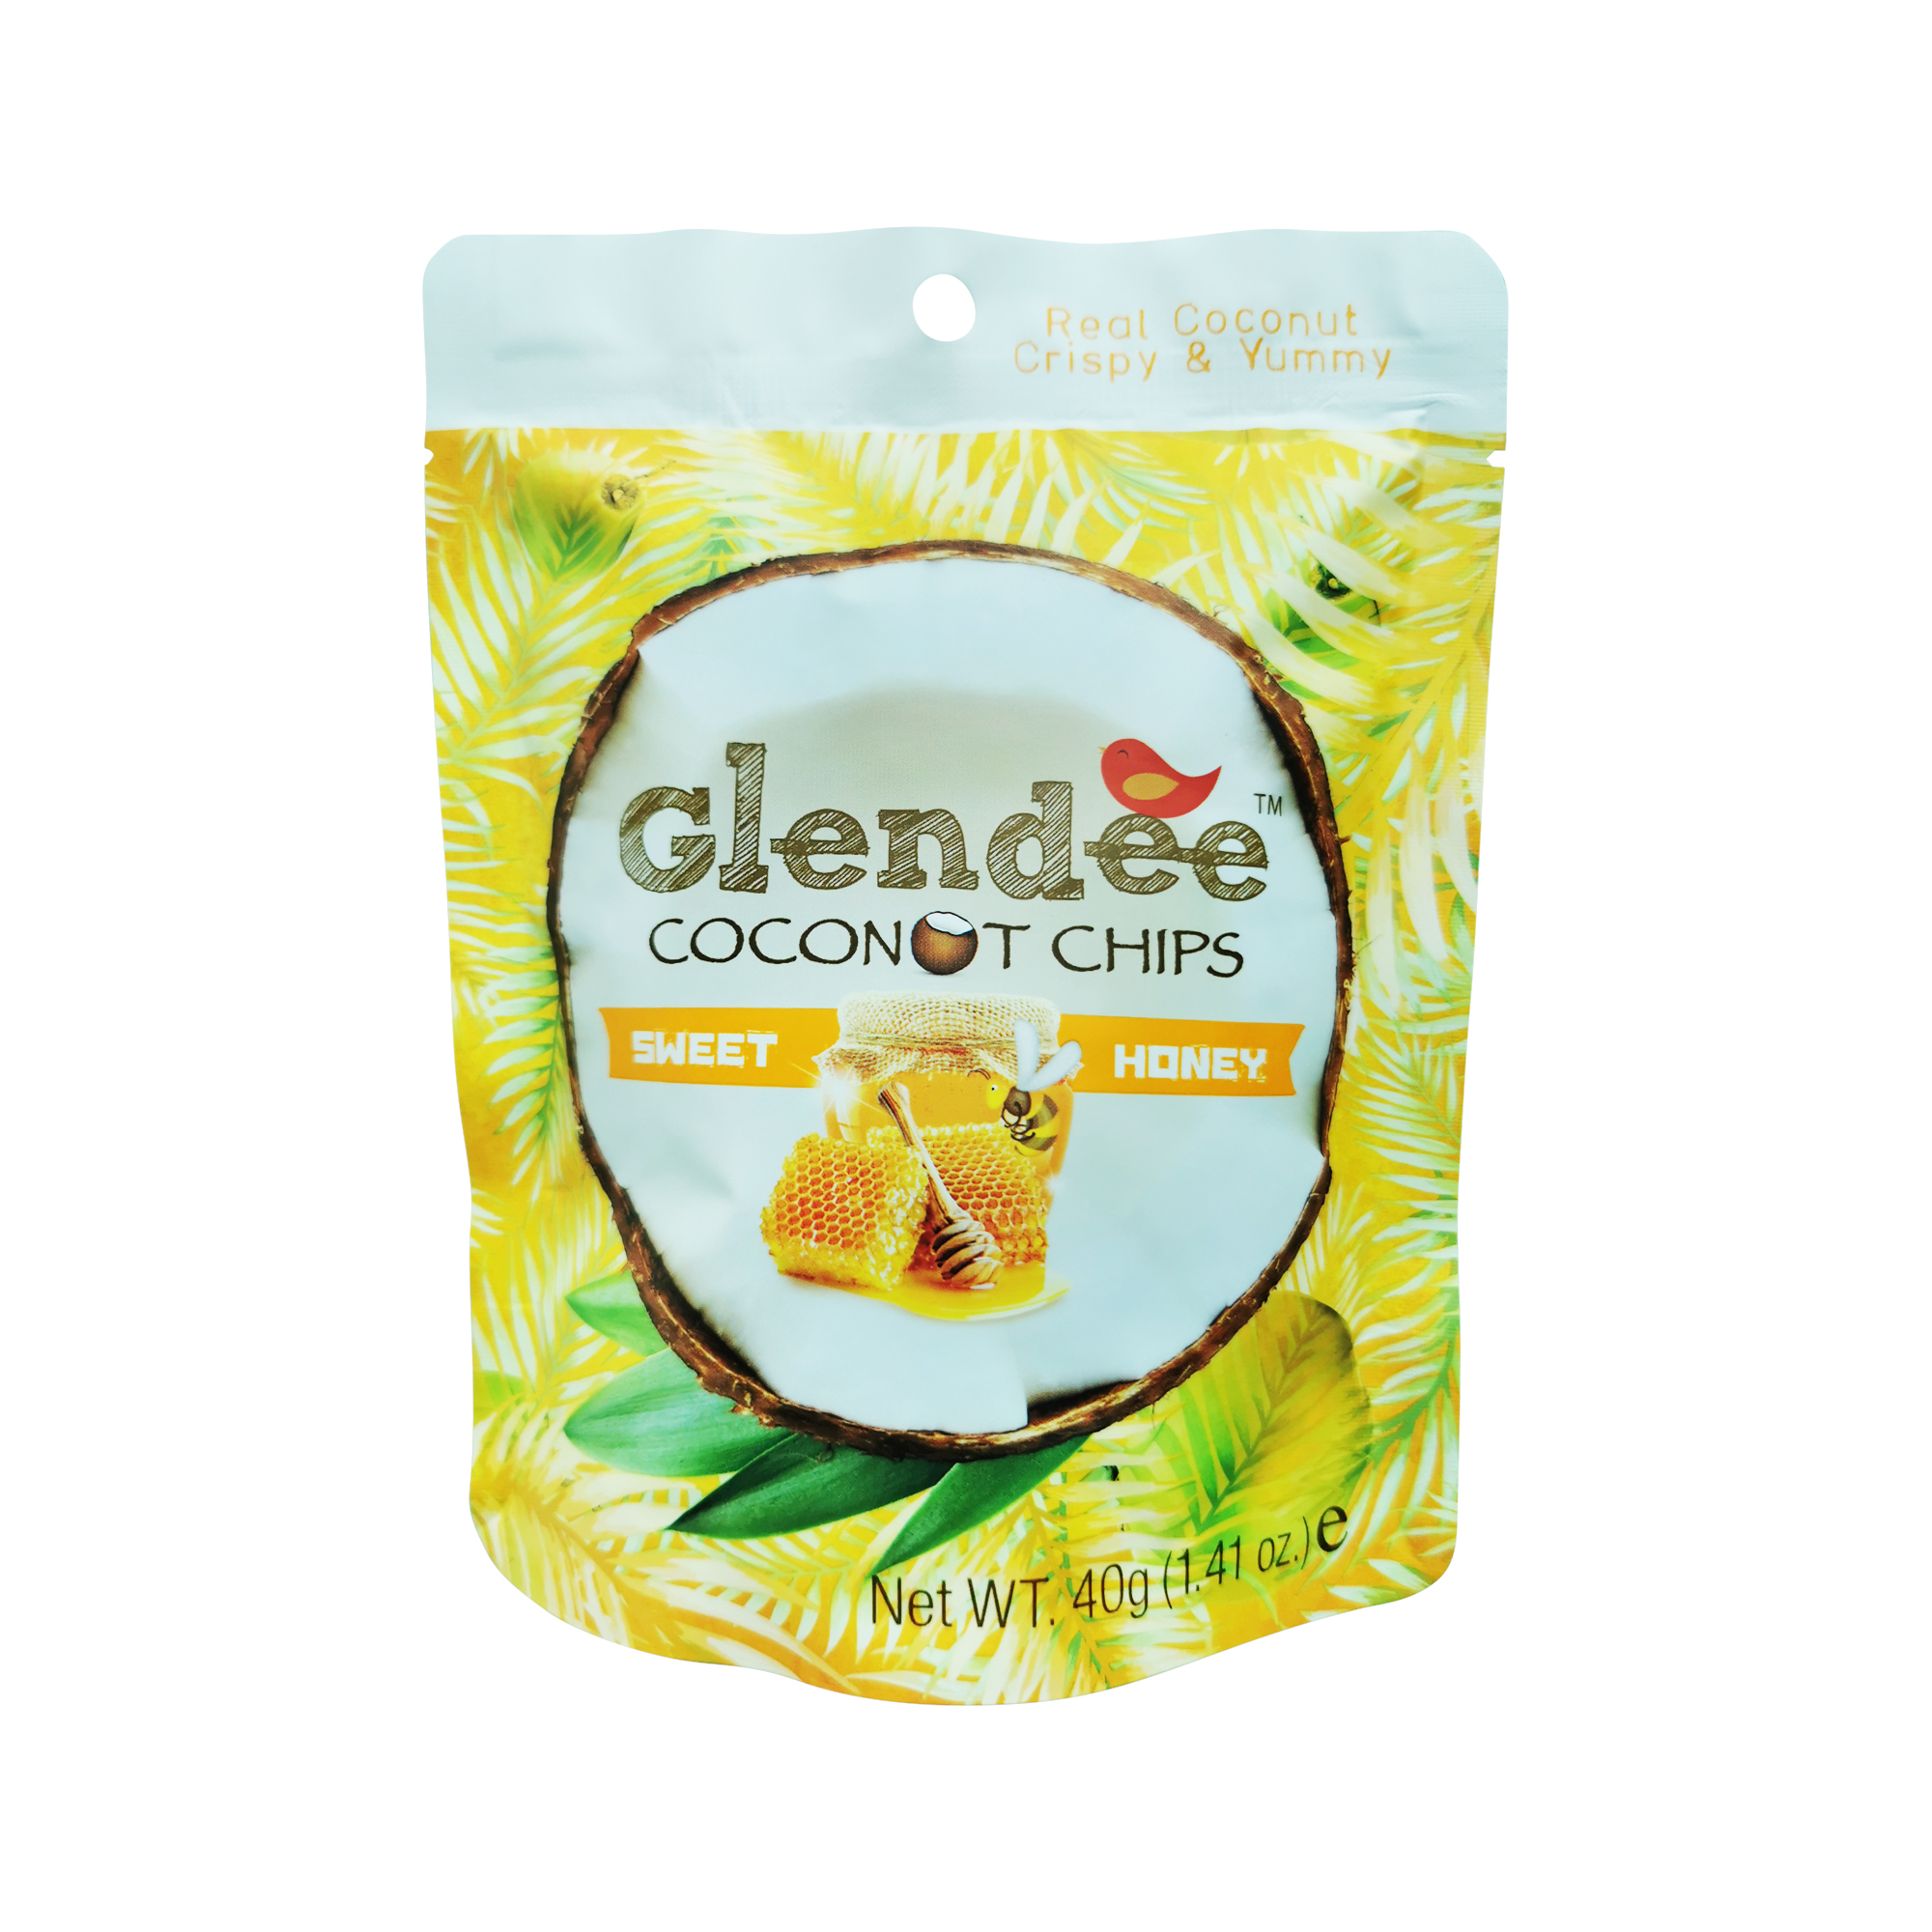 Glendee Coconut Chips Honey 40g